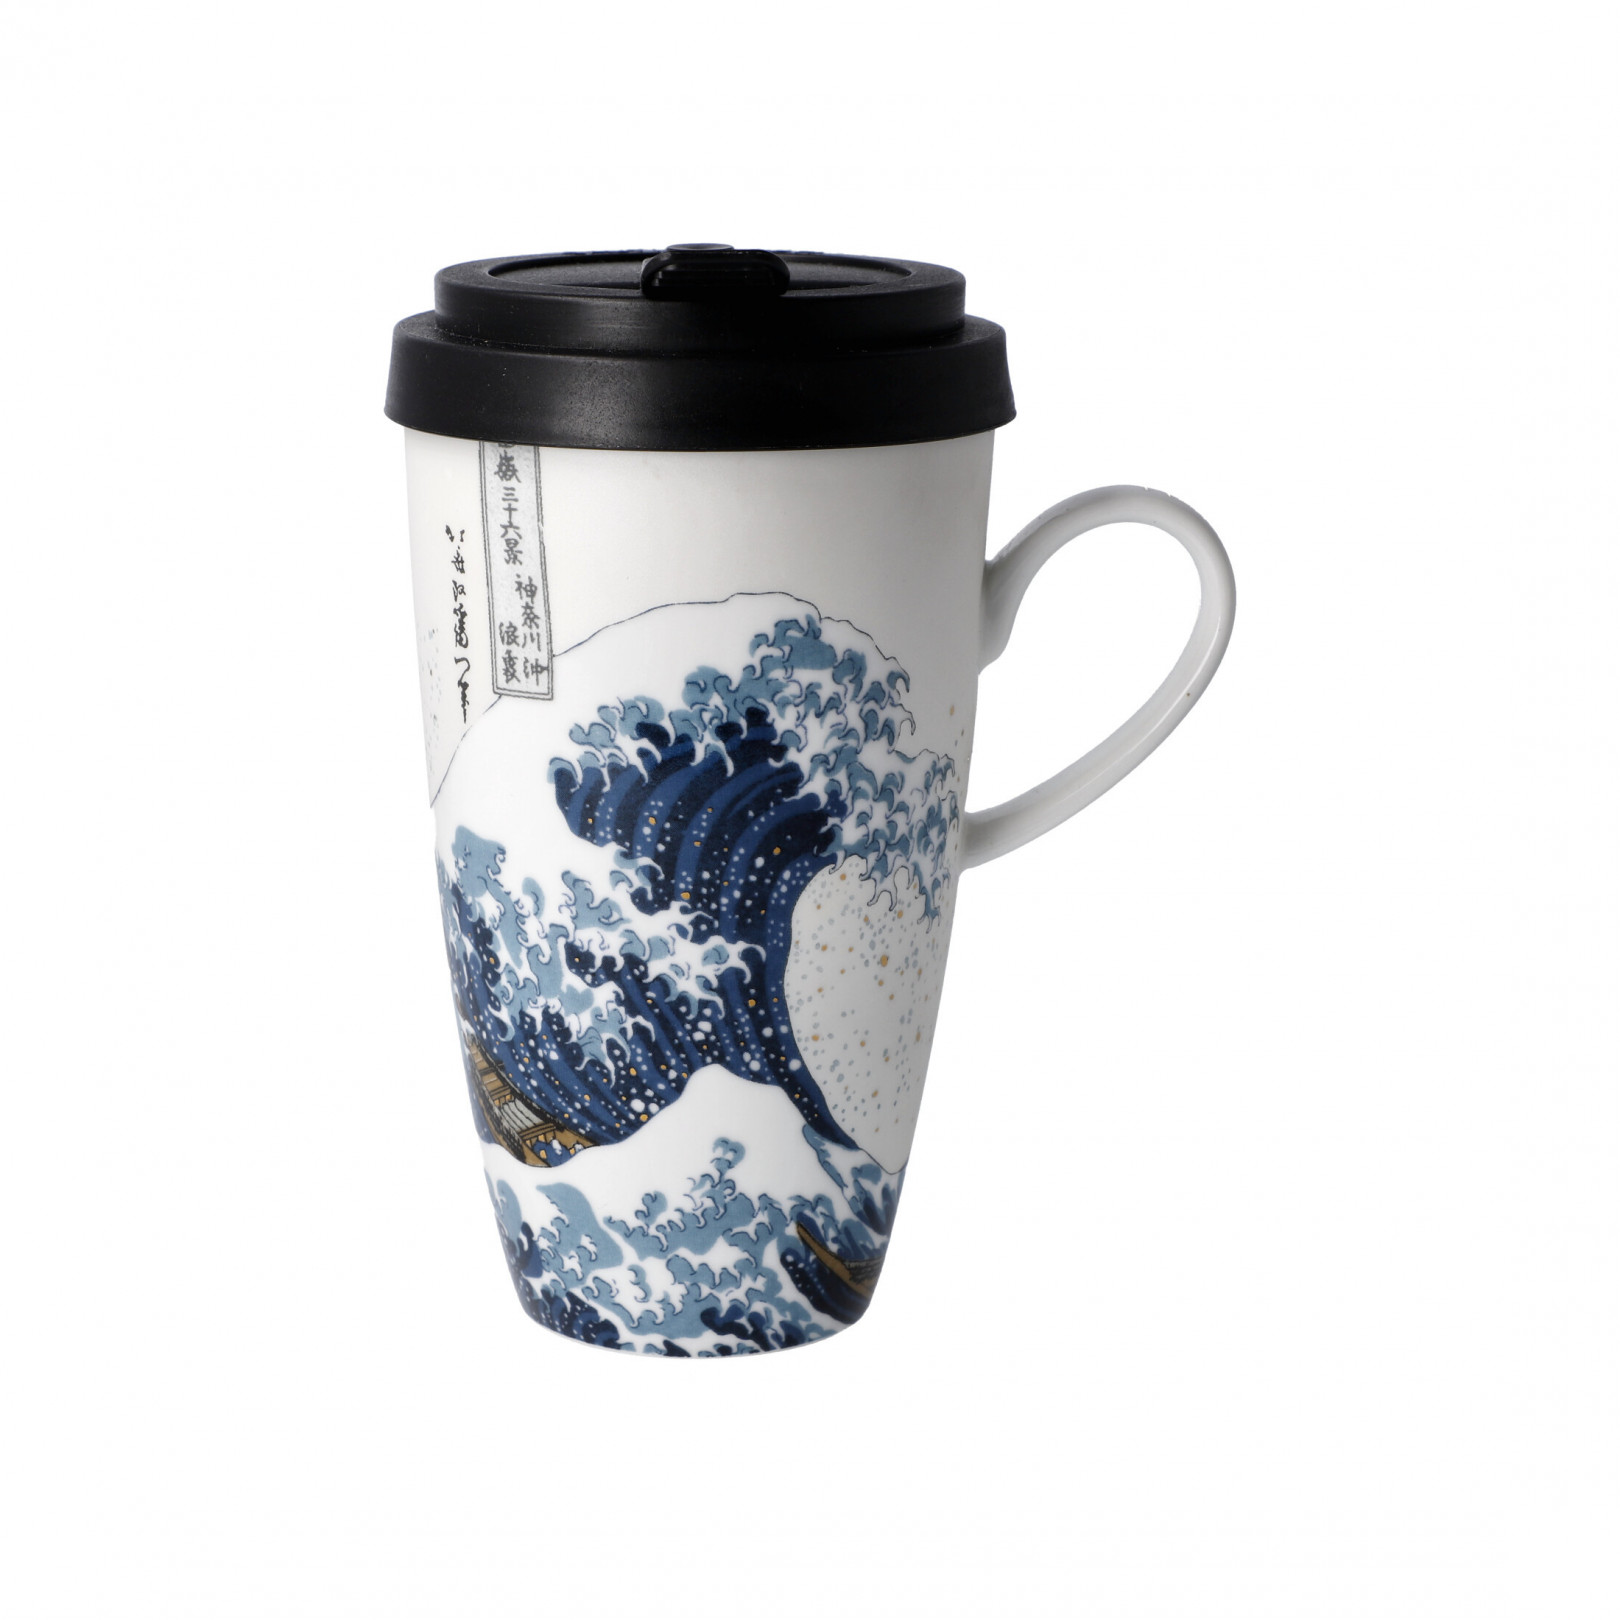 Kubek na wynos 500 ml- K.Hokusai-Wielka fala - Goebel